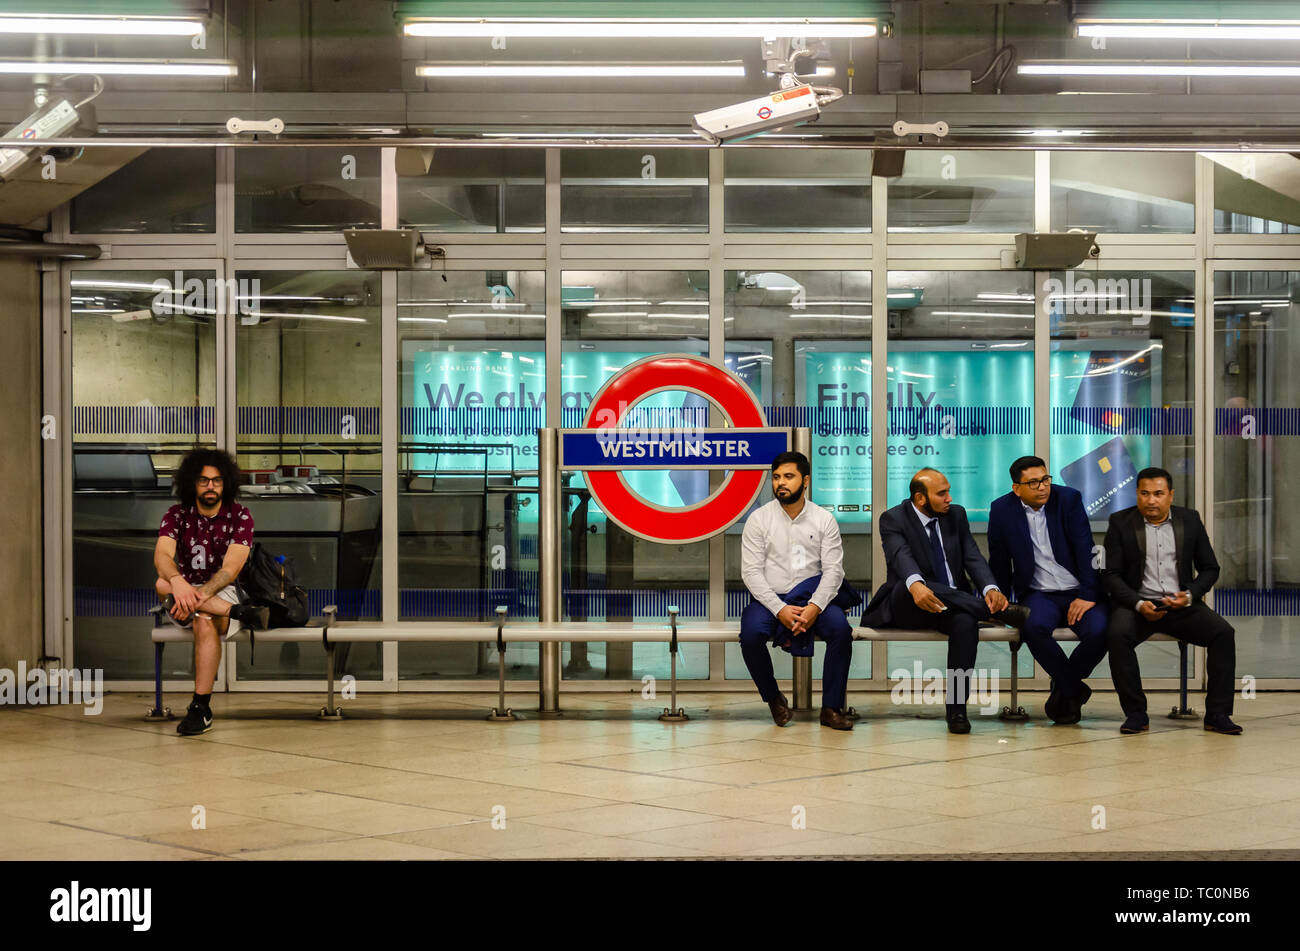 Un homme est assis seul sur un banc sur la plate-forme à la station de métro Westminster comme un groupe d'hommes asiatiques assis ensemble. Banque D'Images